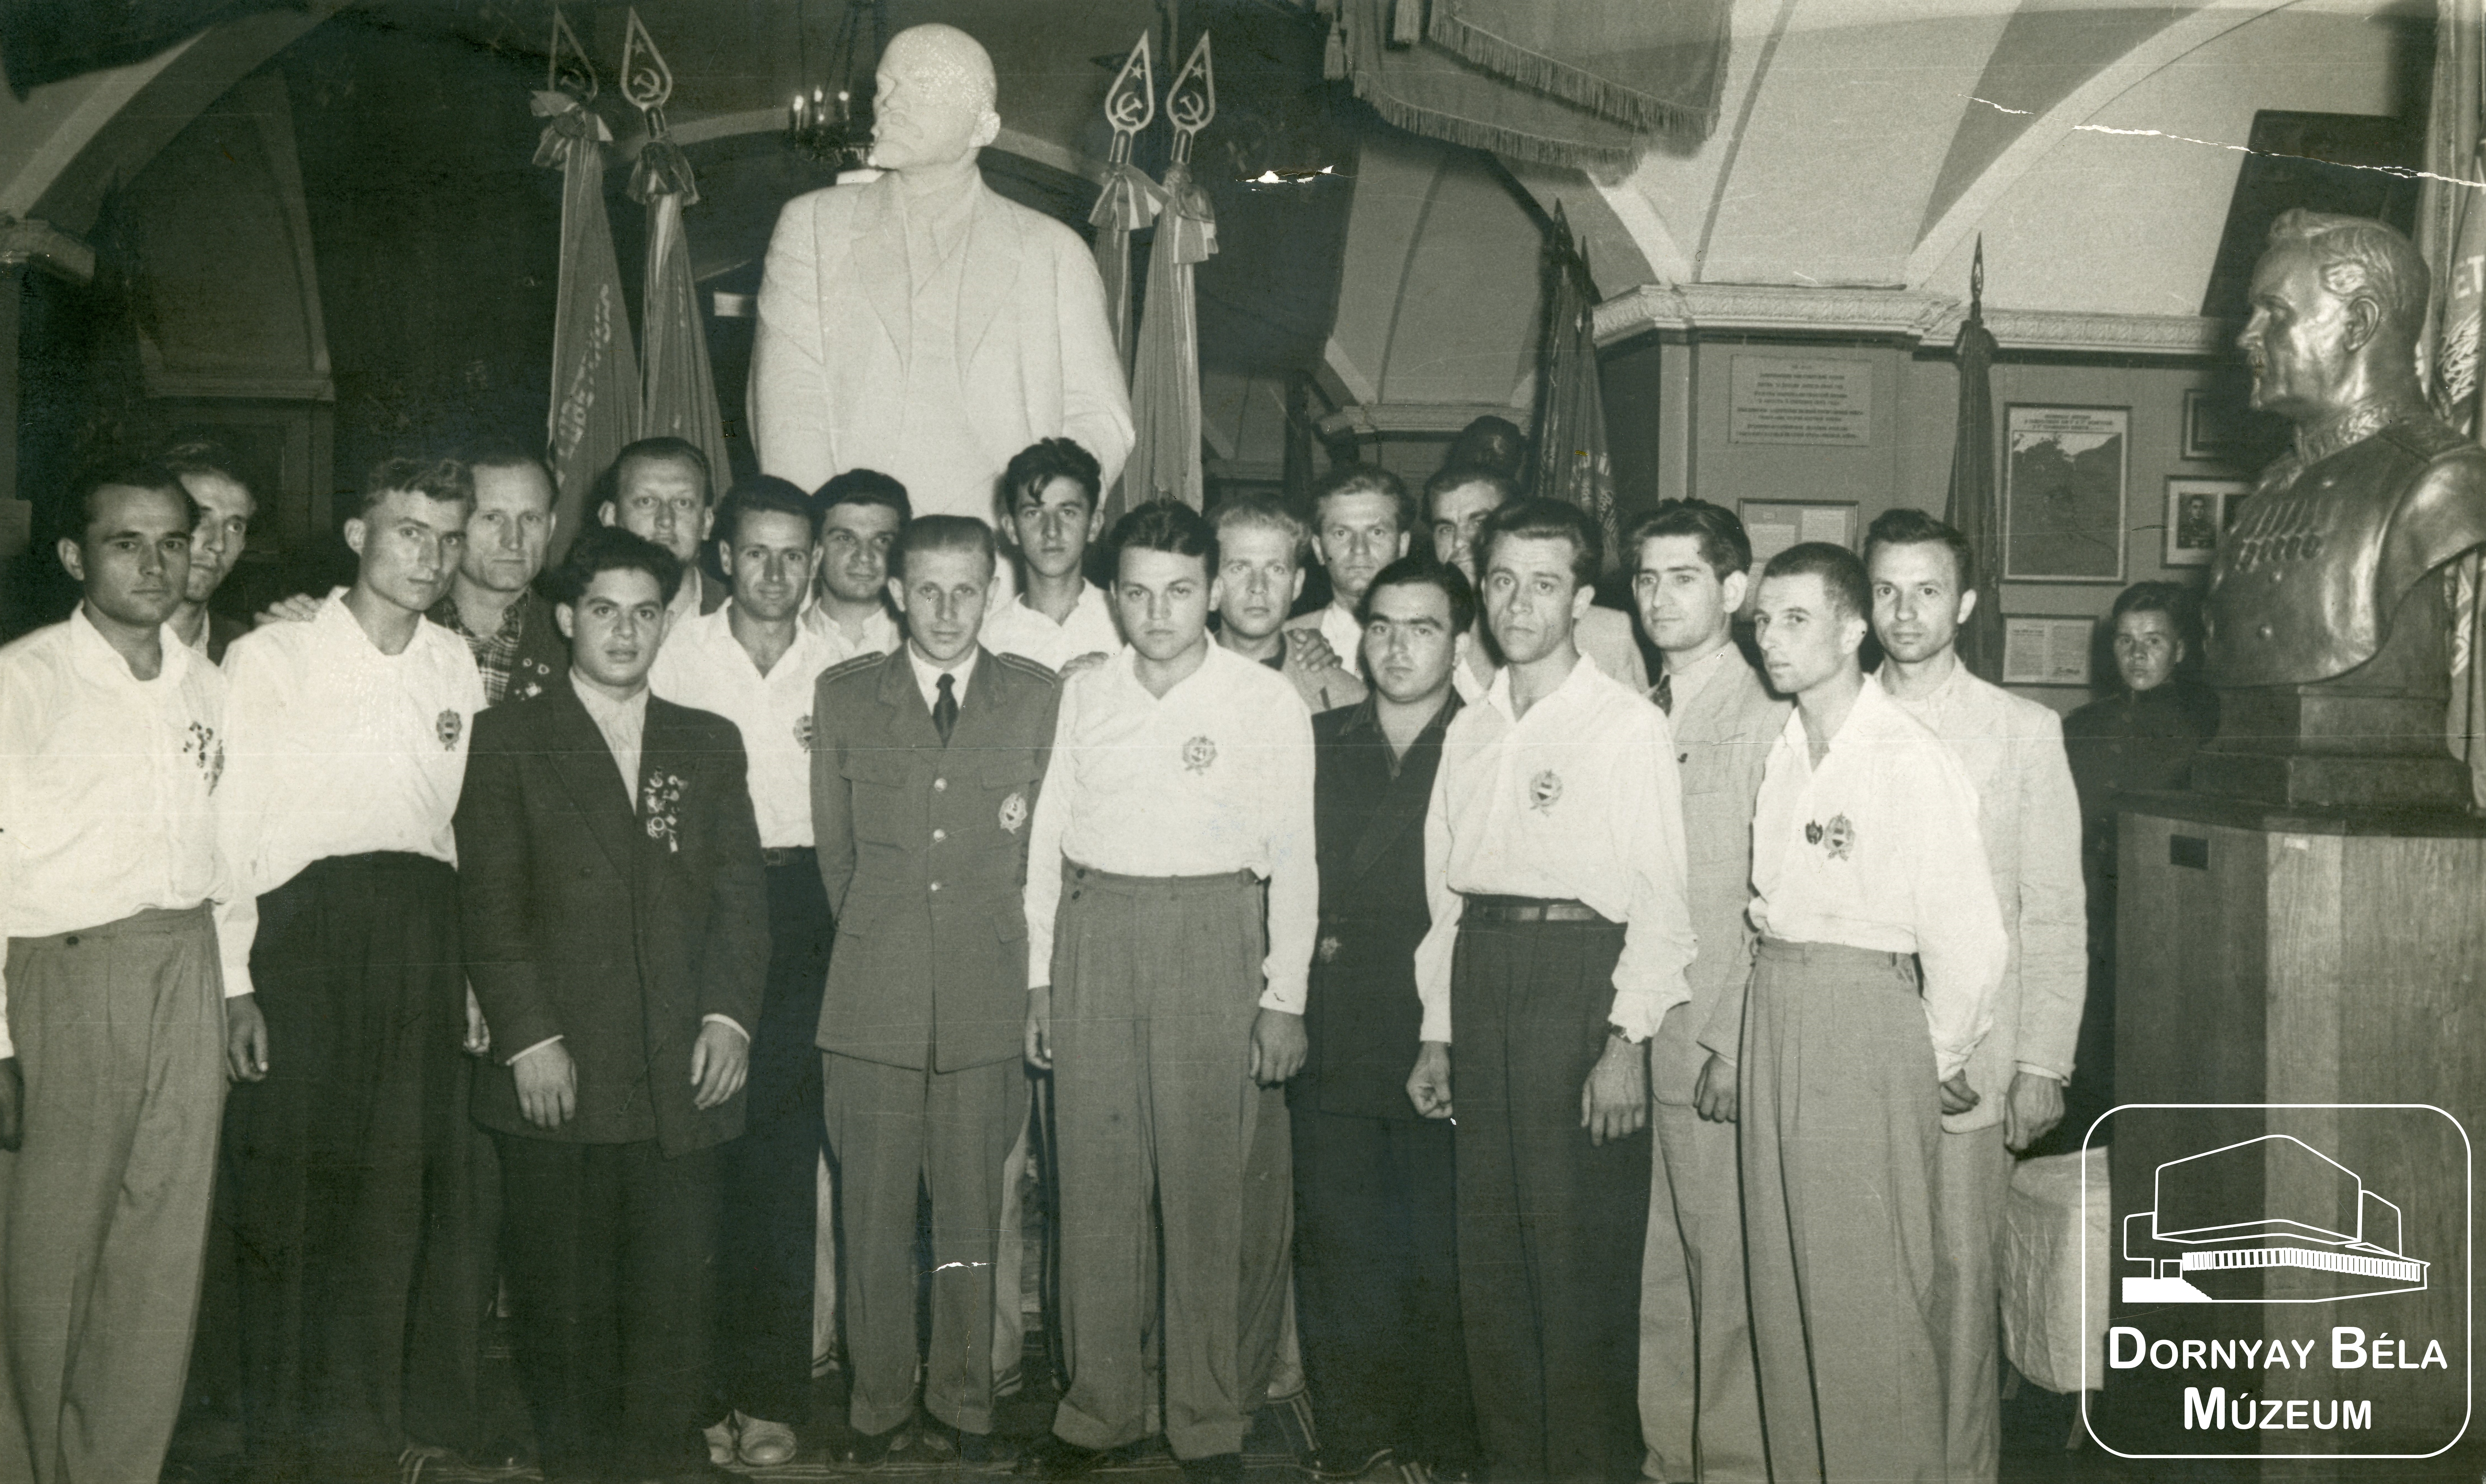 Világ Ifjúsági találkozós csoportkép, köztük Nógrád megyéből 11 fős delegáció. (Dornyay Béla Múzeum, Salgótarján CC BY-NC-SA)